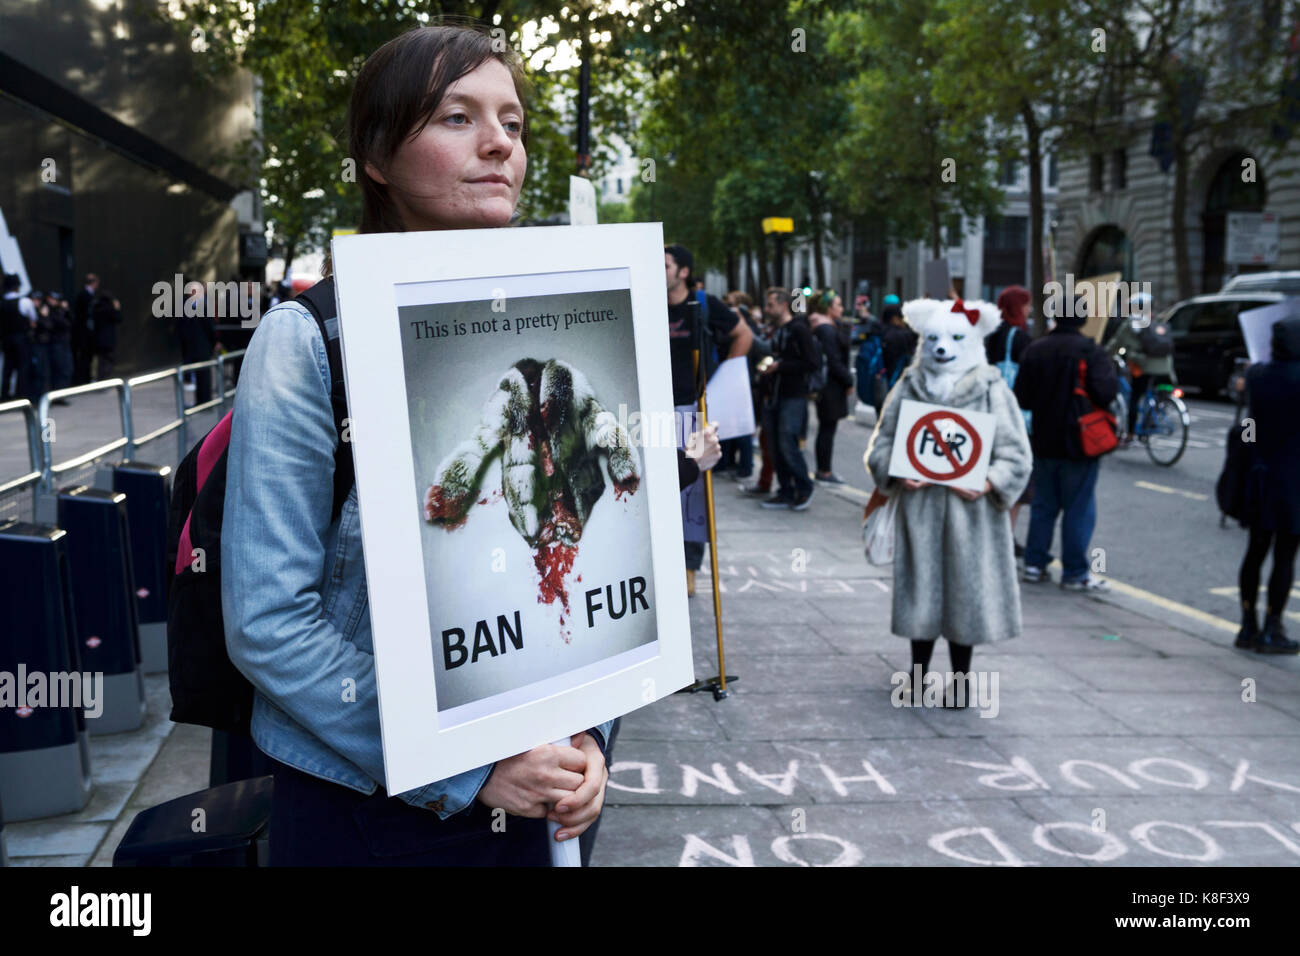 Les manifestants pour les droits des animaux pour protester contre l'utilisation de la fourrure, en dehors de la London Fashion Week show l'espace, dans le Strand, London UK. Manifestation anti fourrure. Banque D'Images